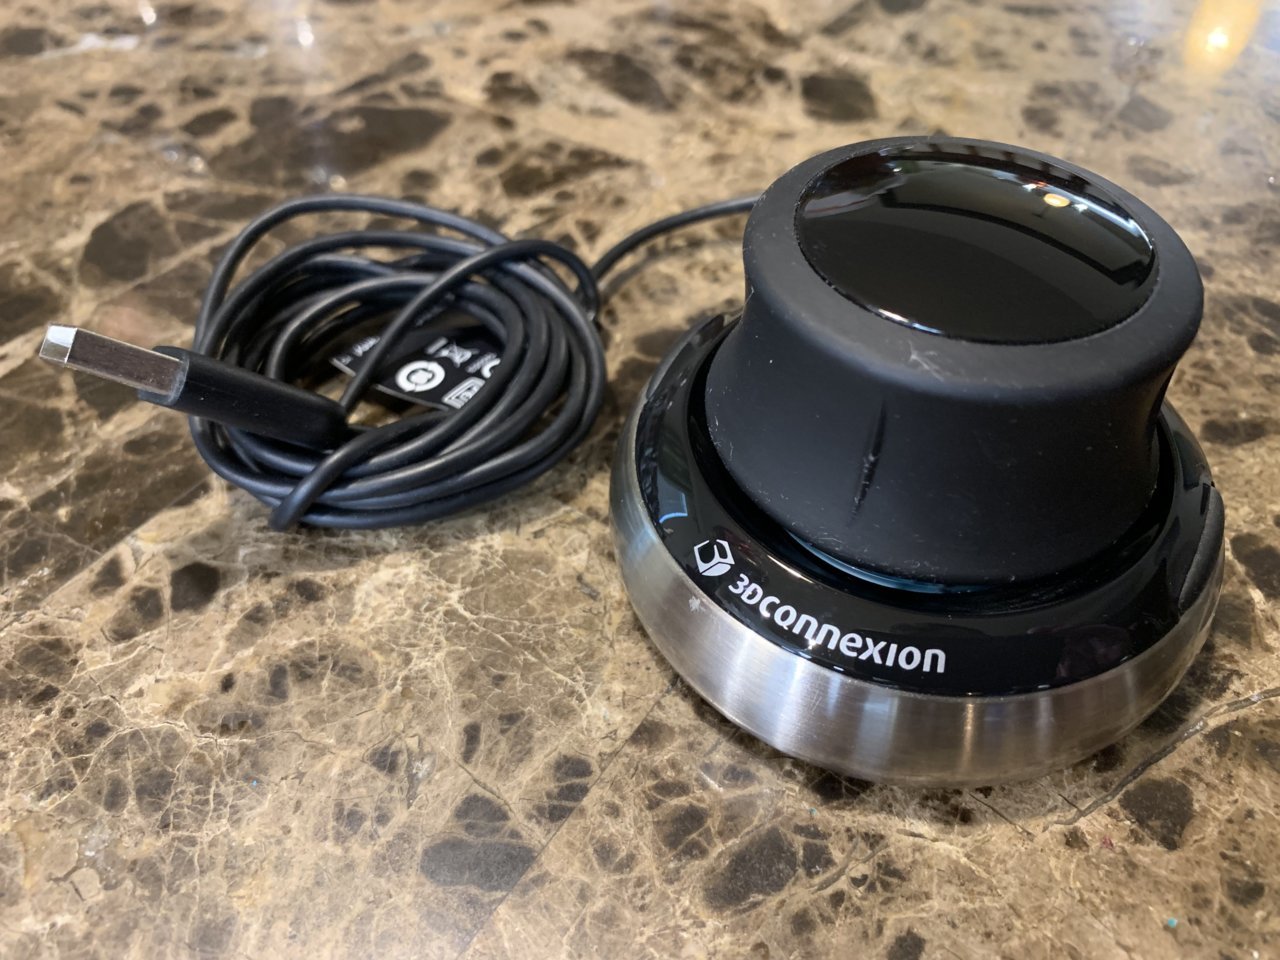 3DConnexion 3DX-700059 Spacemouse Compact 3D Mouse